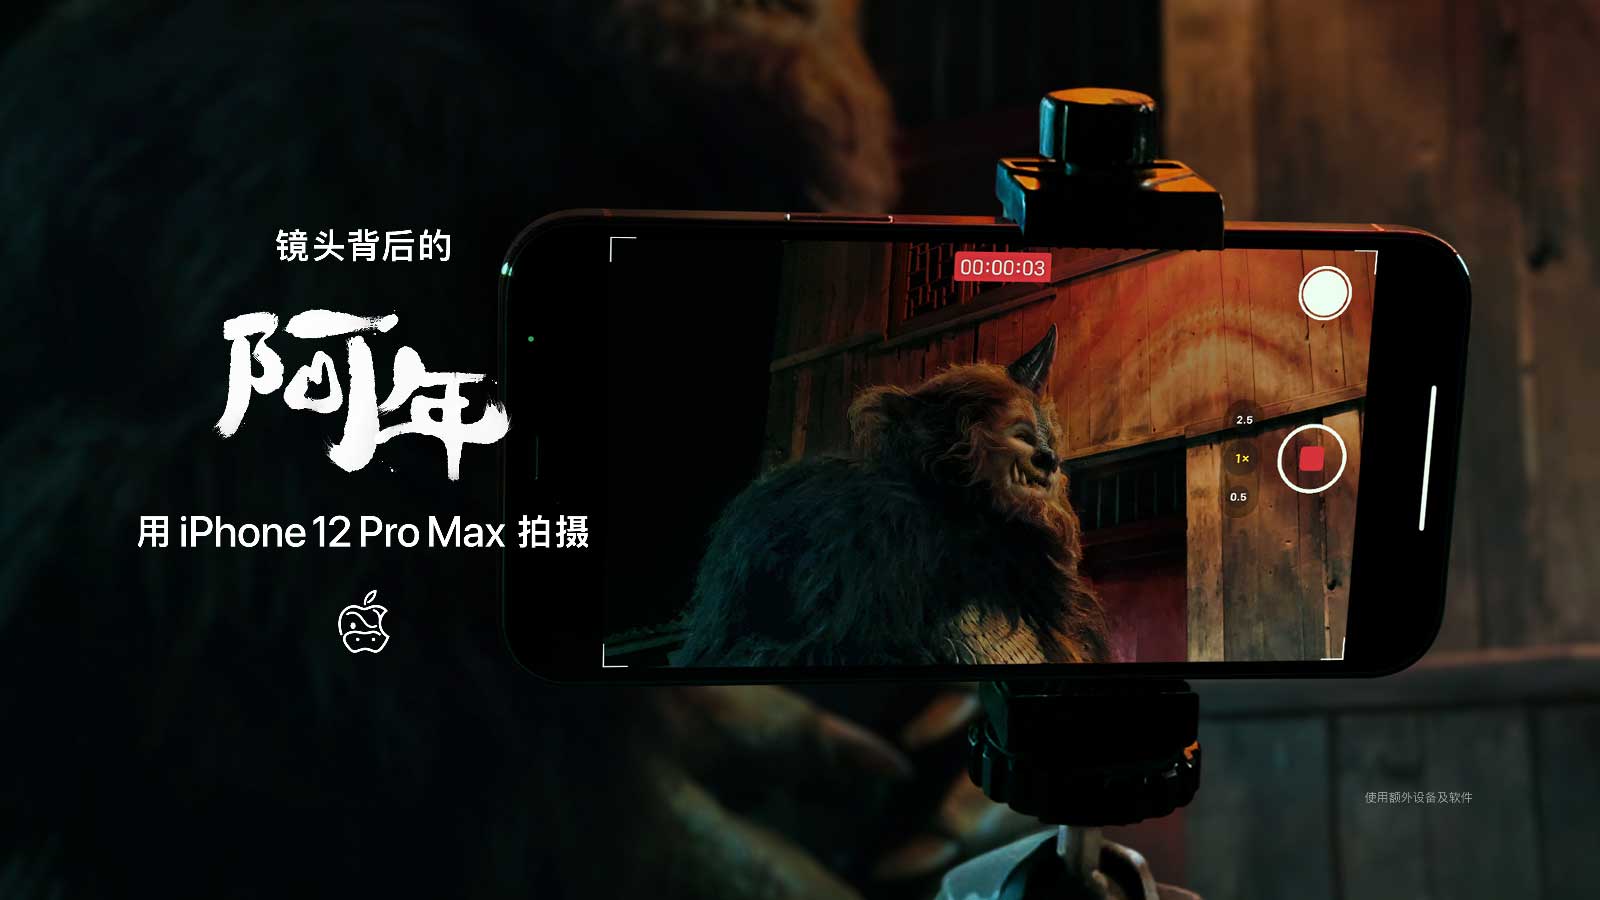 揭开iPhone 12 Pro Max新年电影《阿念》背后的故事